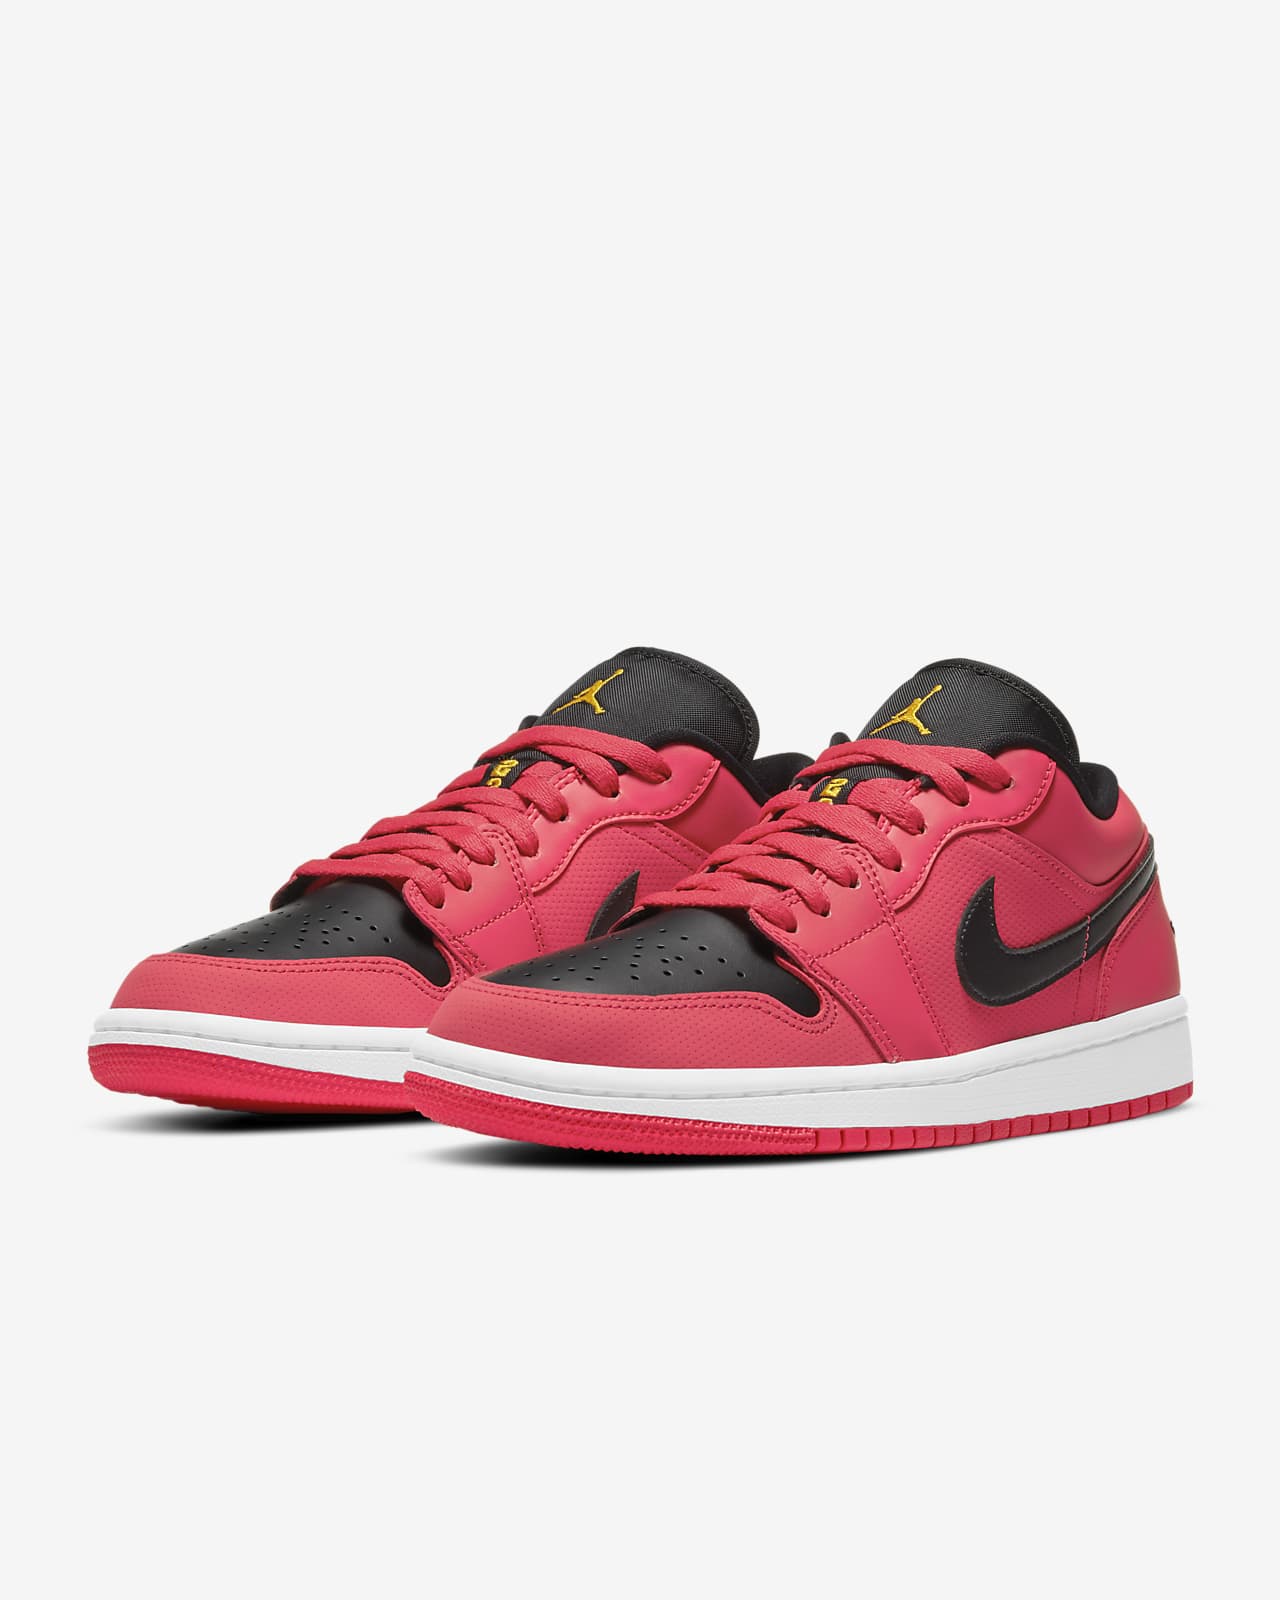 Air Jordan 1 Low Women's Shoe. Nike NL